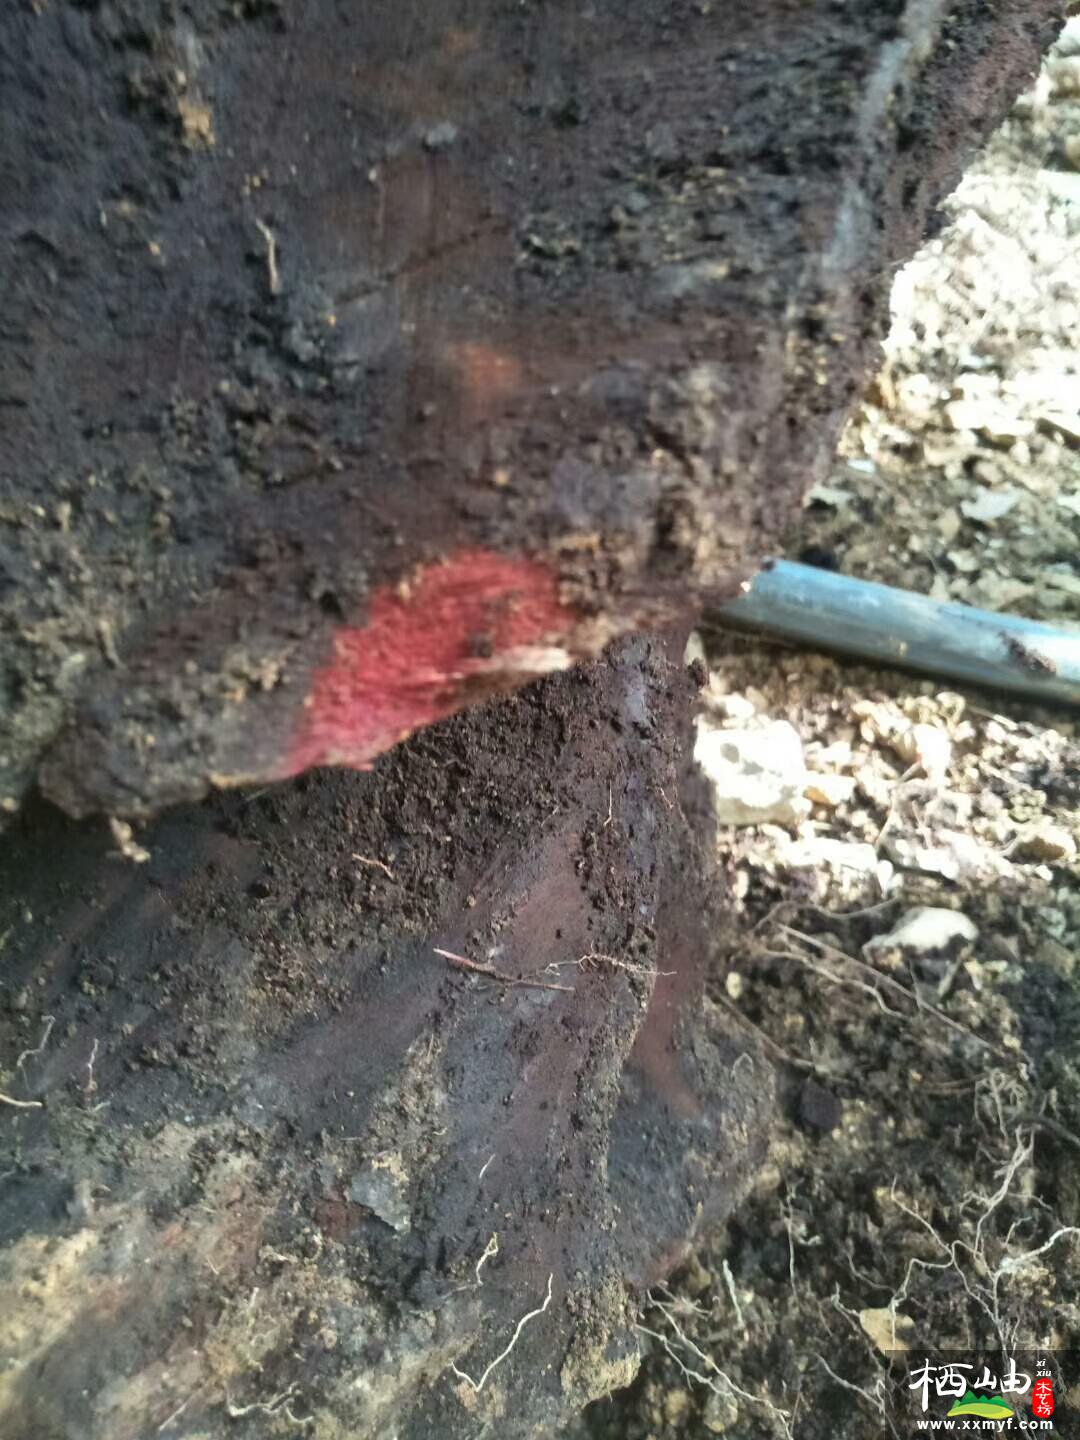 这是刚刚刨开流漏出的红色木质